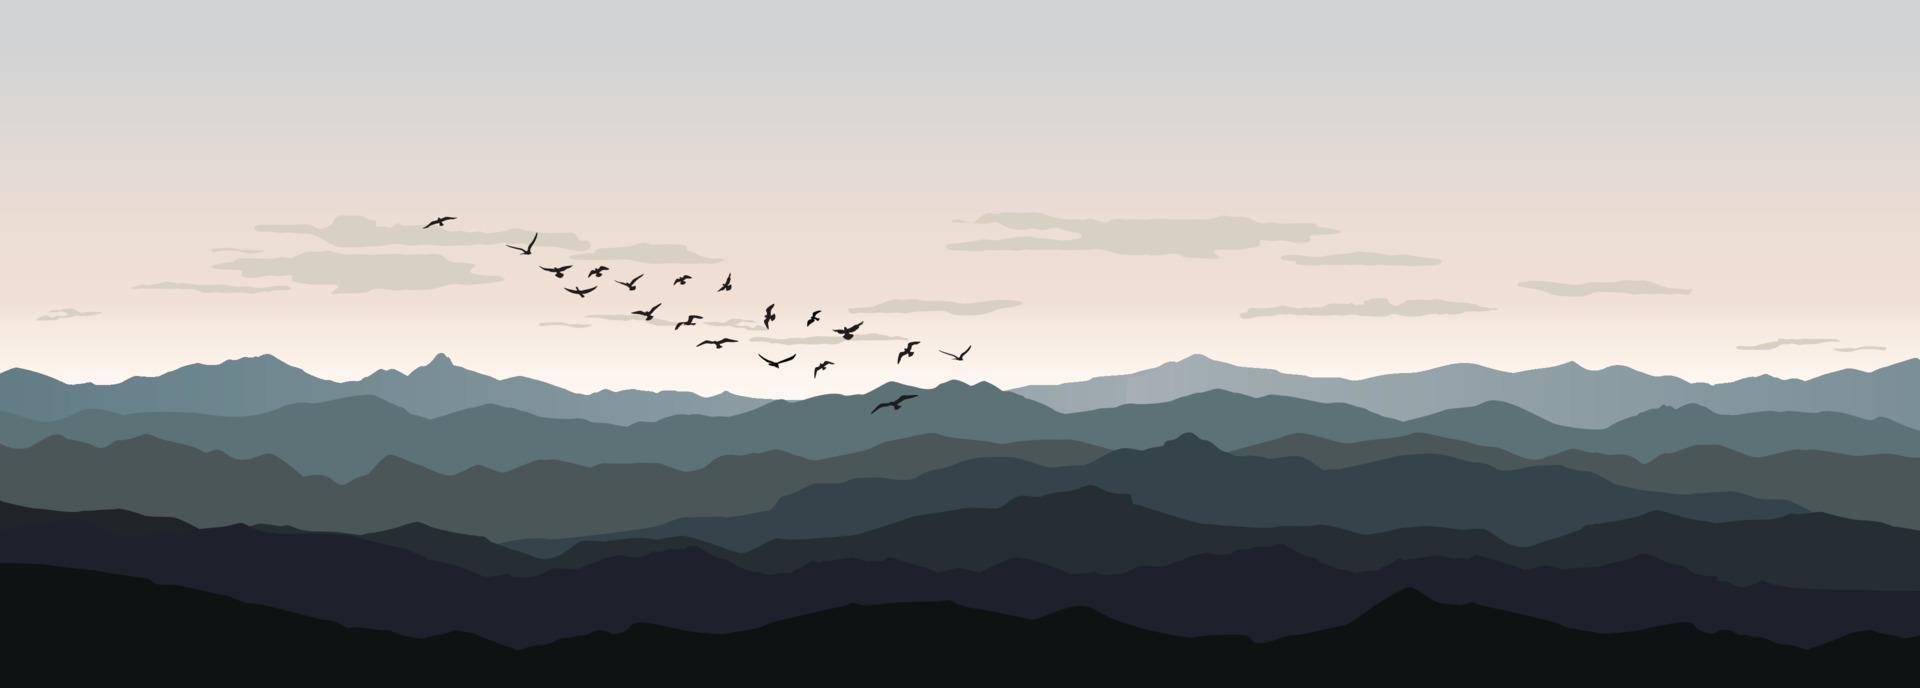 paisaje de naturaleza rural. silueta de pájaro volando sobre colinas y fondo del cielo. horizonte de montaña de vida silvestre animal. fondo de vista del complejo vector